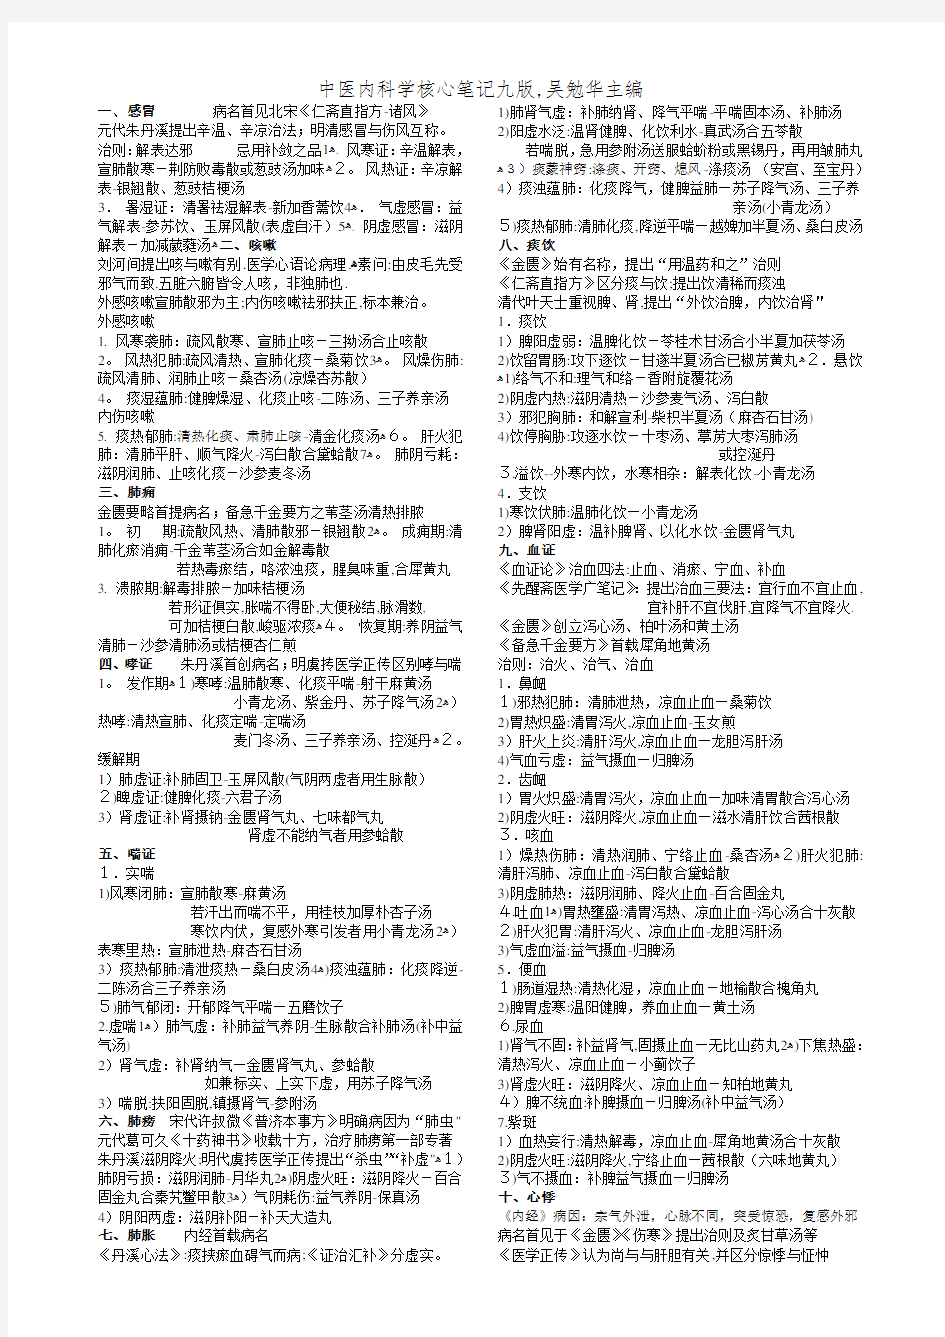 中医内科学核心笔记九版,吴勉华主编